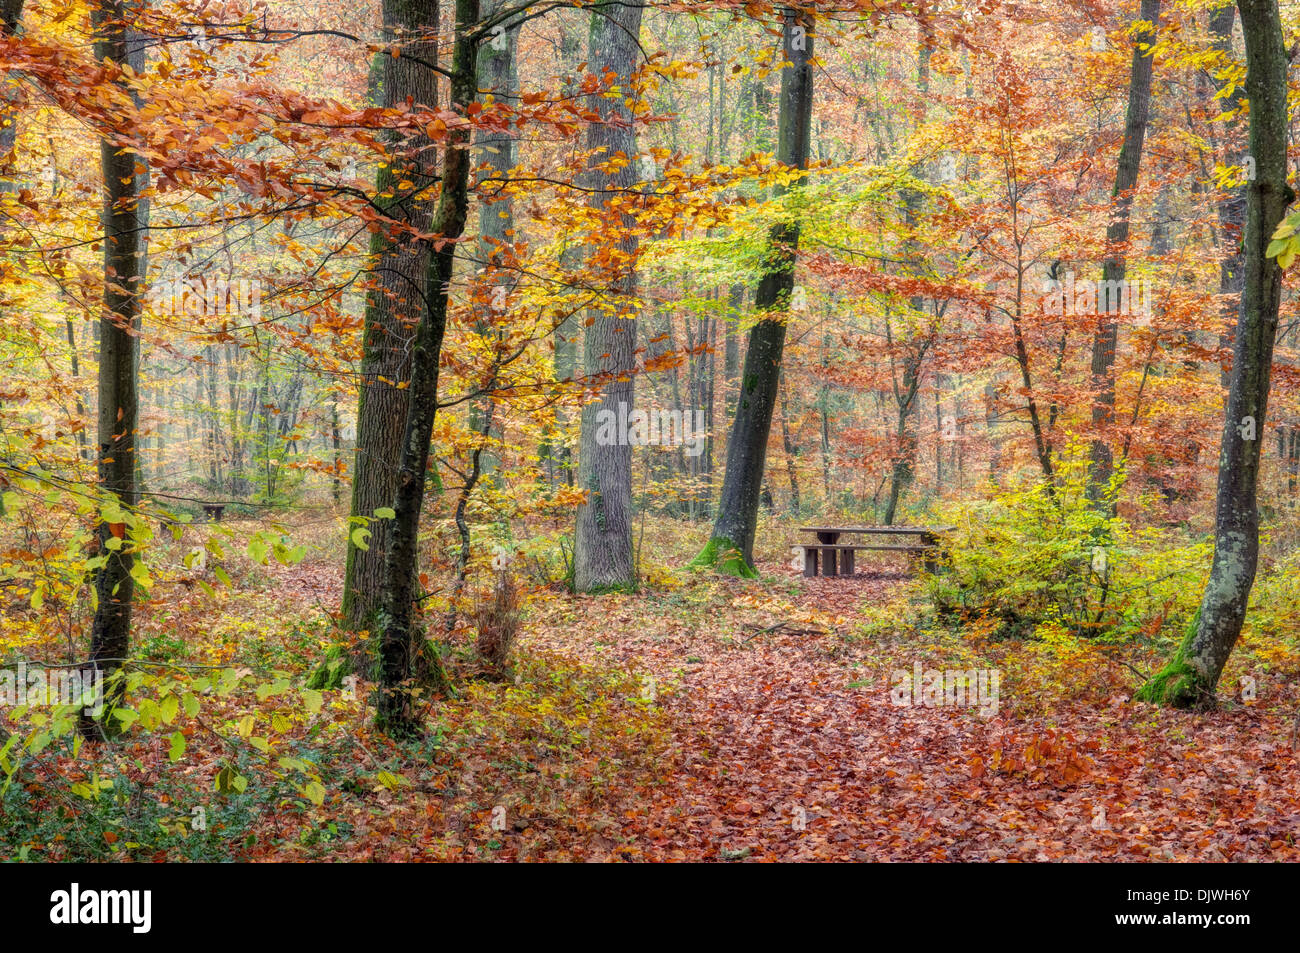 Brun jaune orange vert forêt d'automne background Banque D'Images